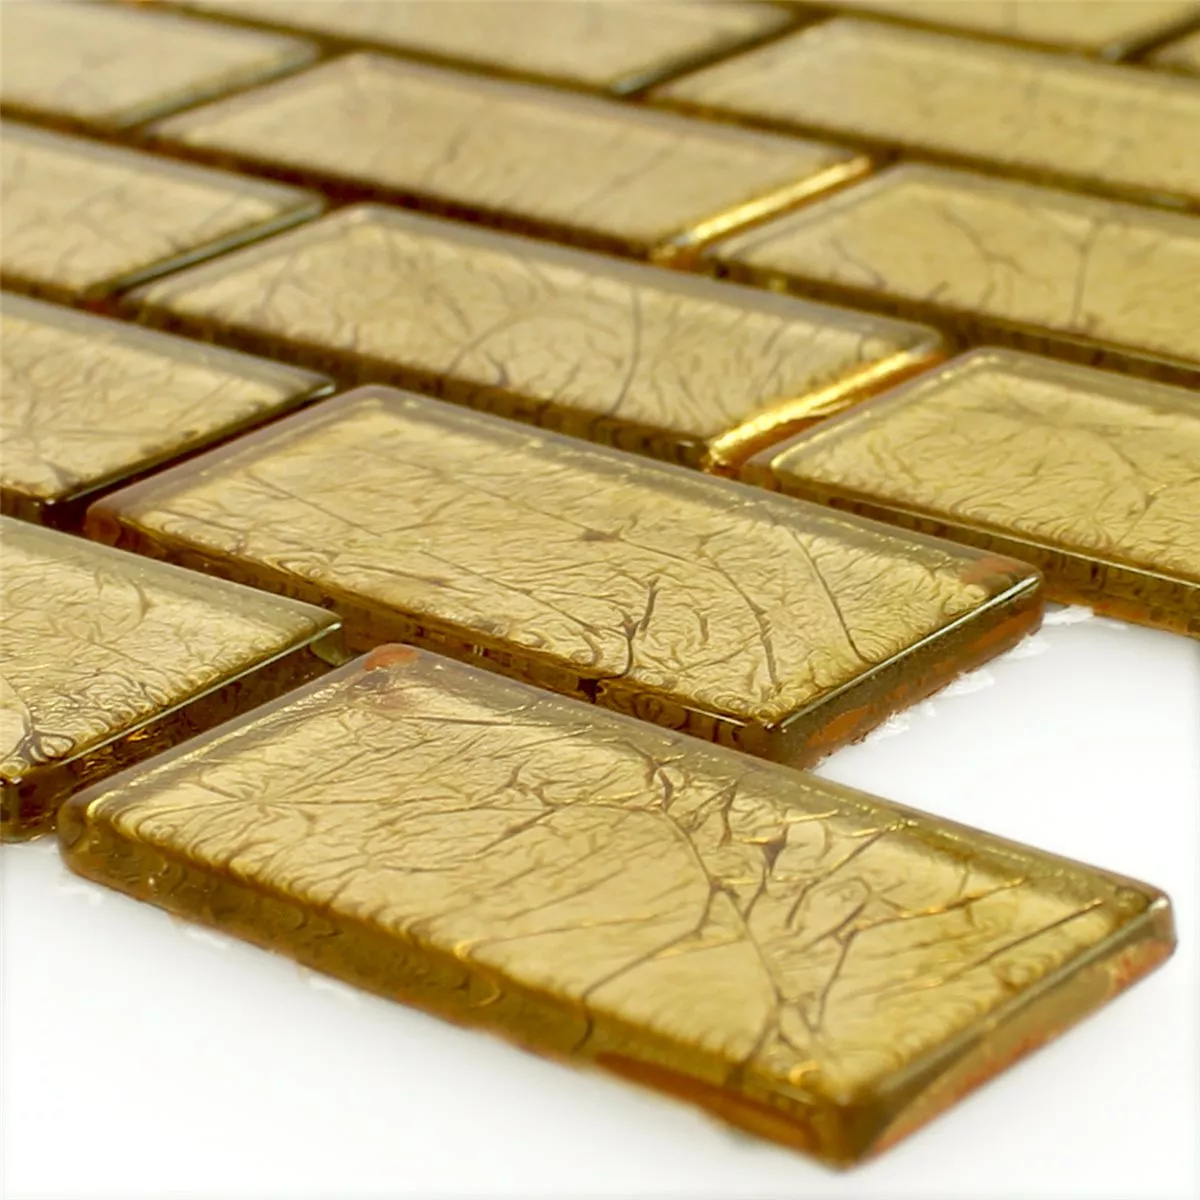 Mosaico Vetro Brick Oro Struttura